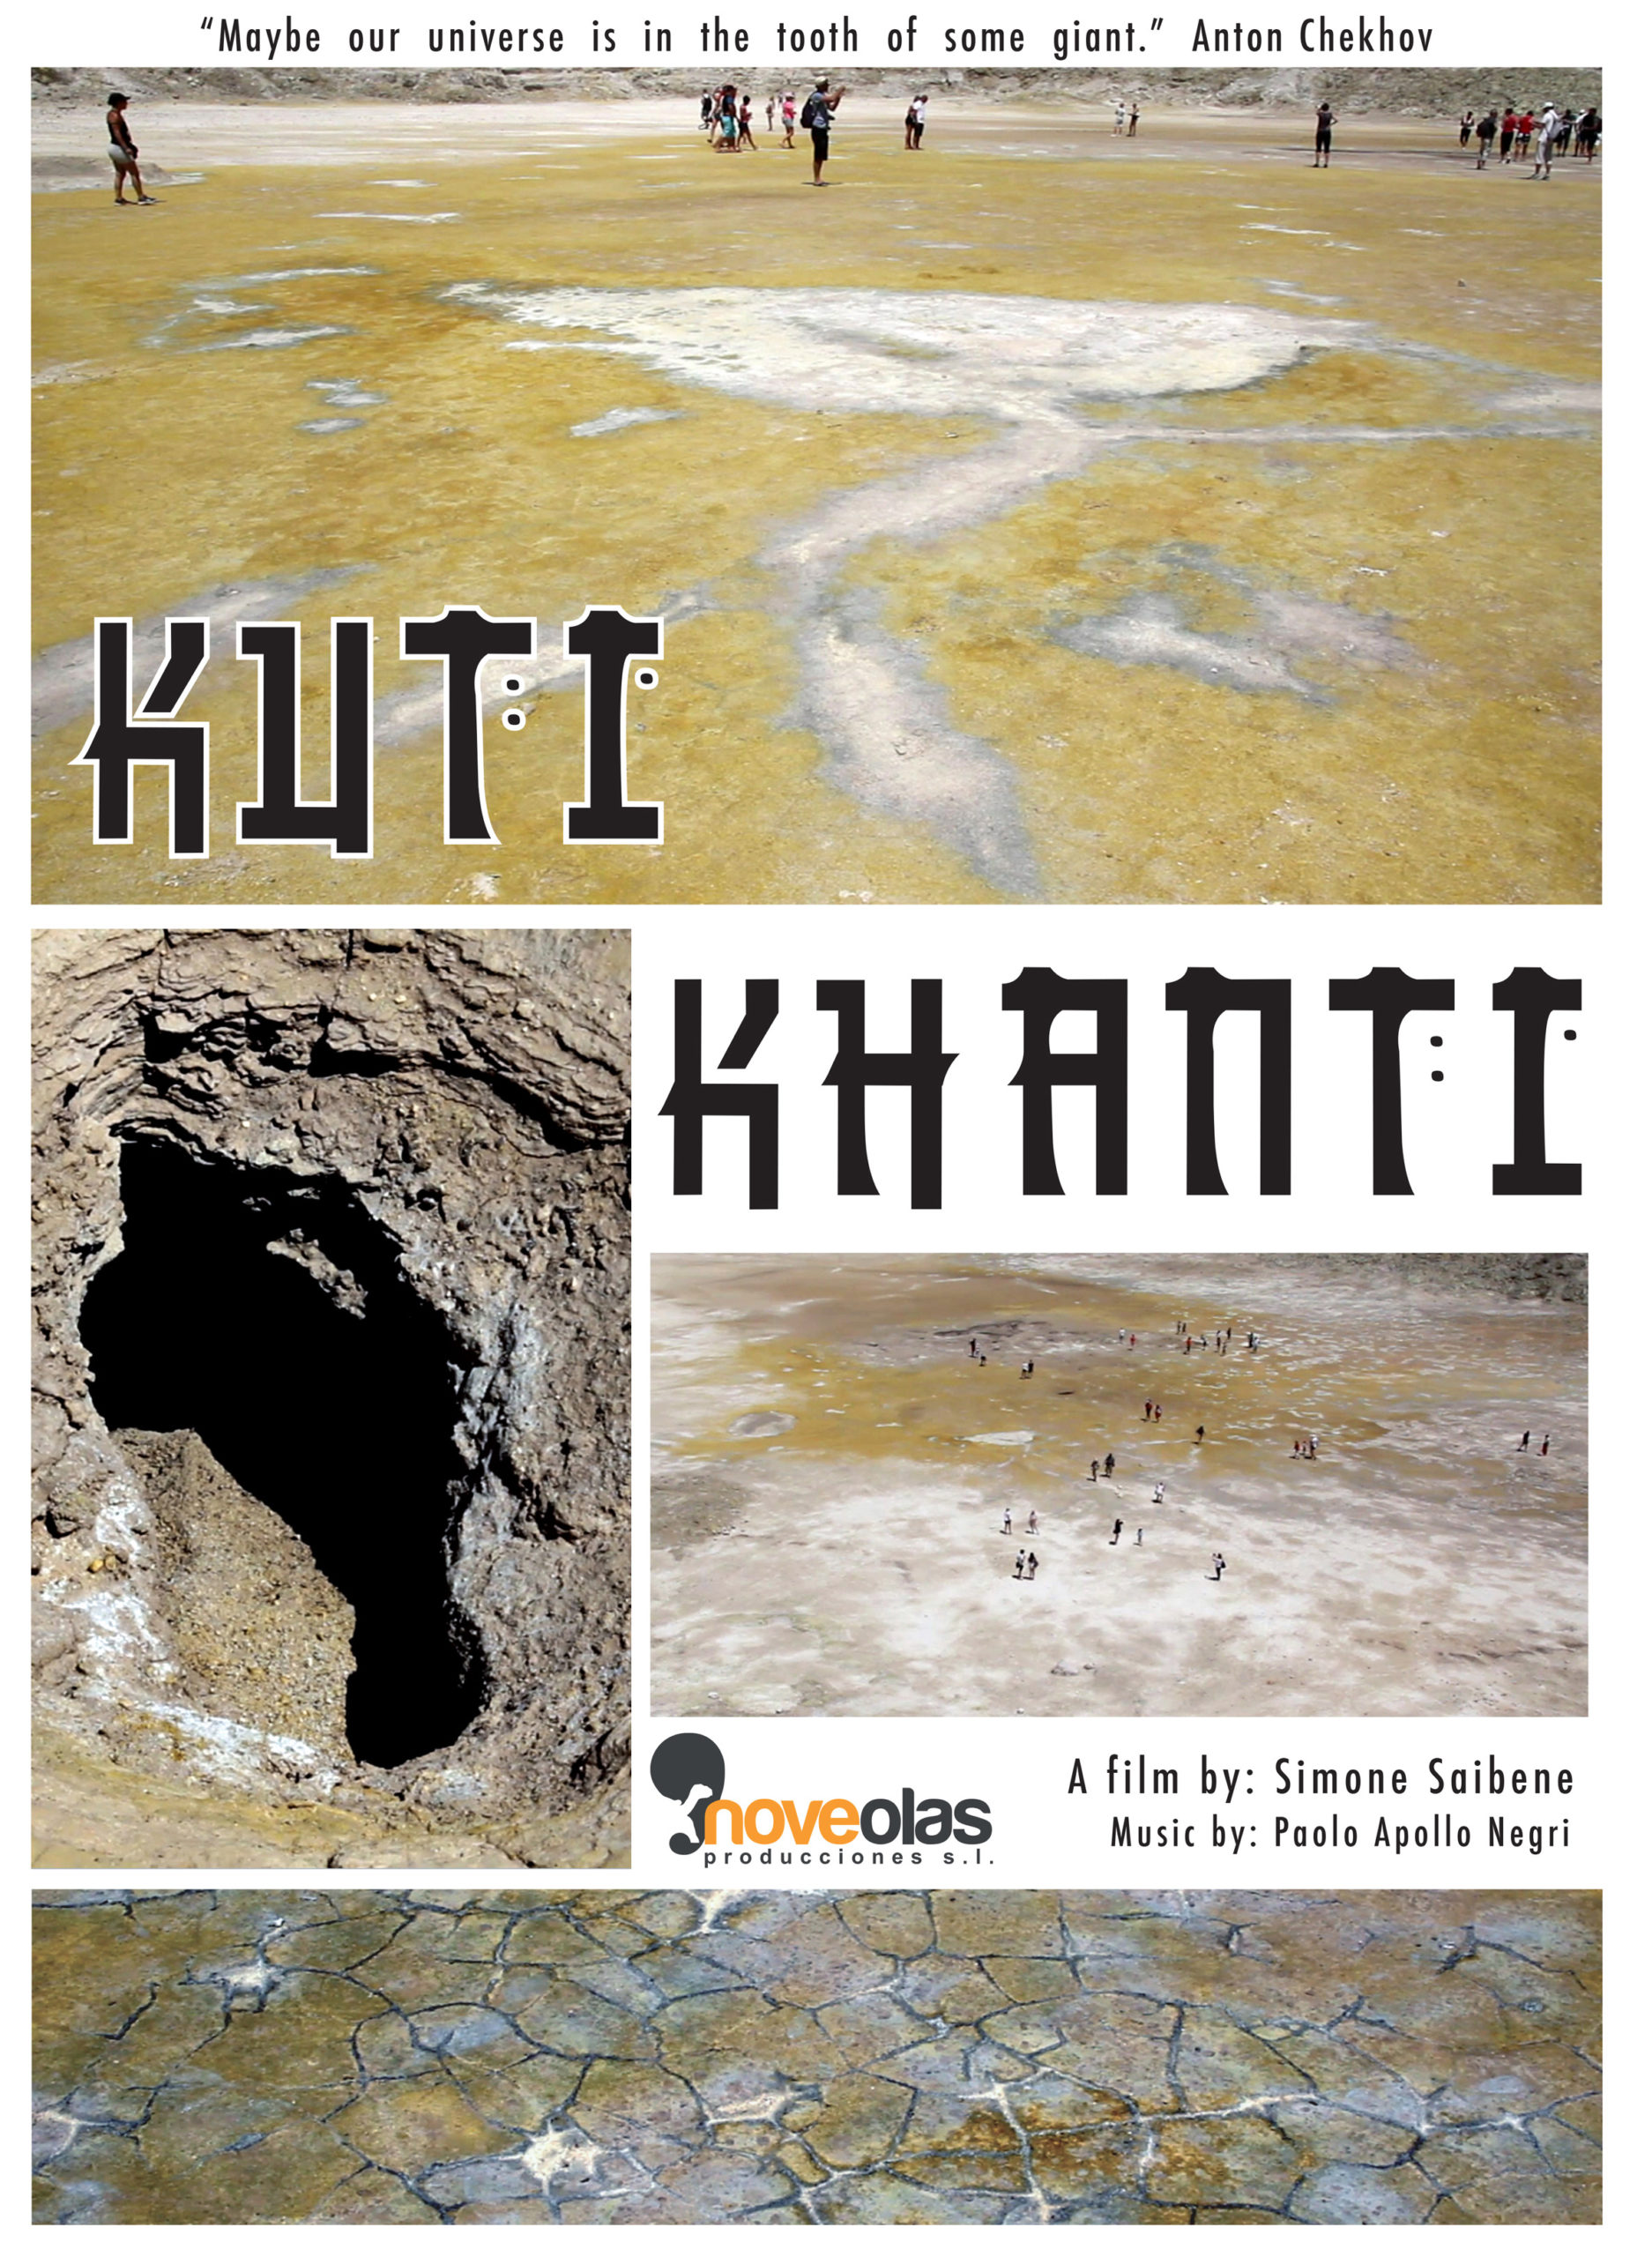 Kuti Khanti